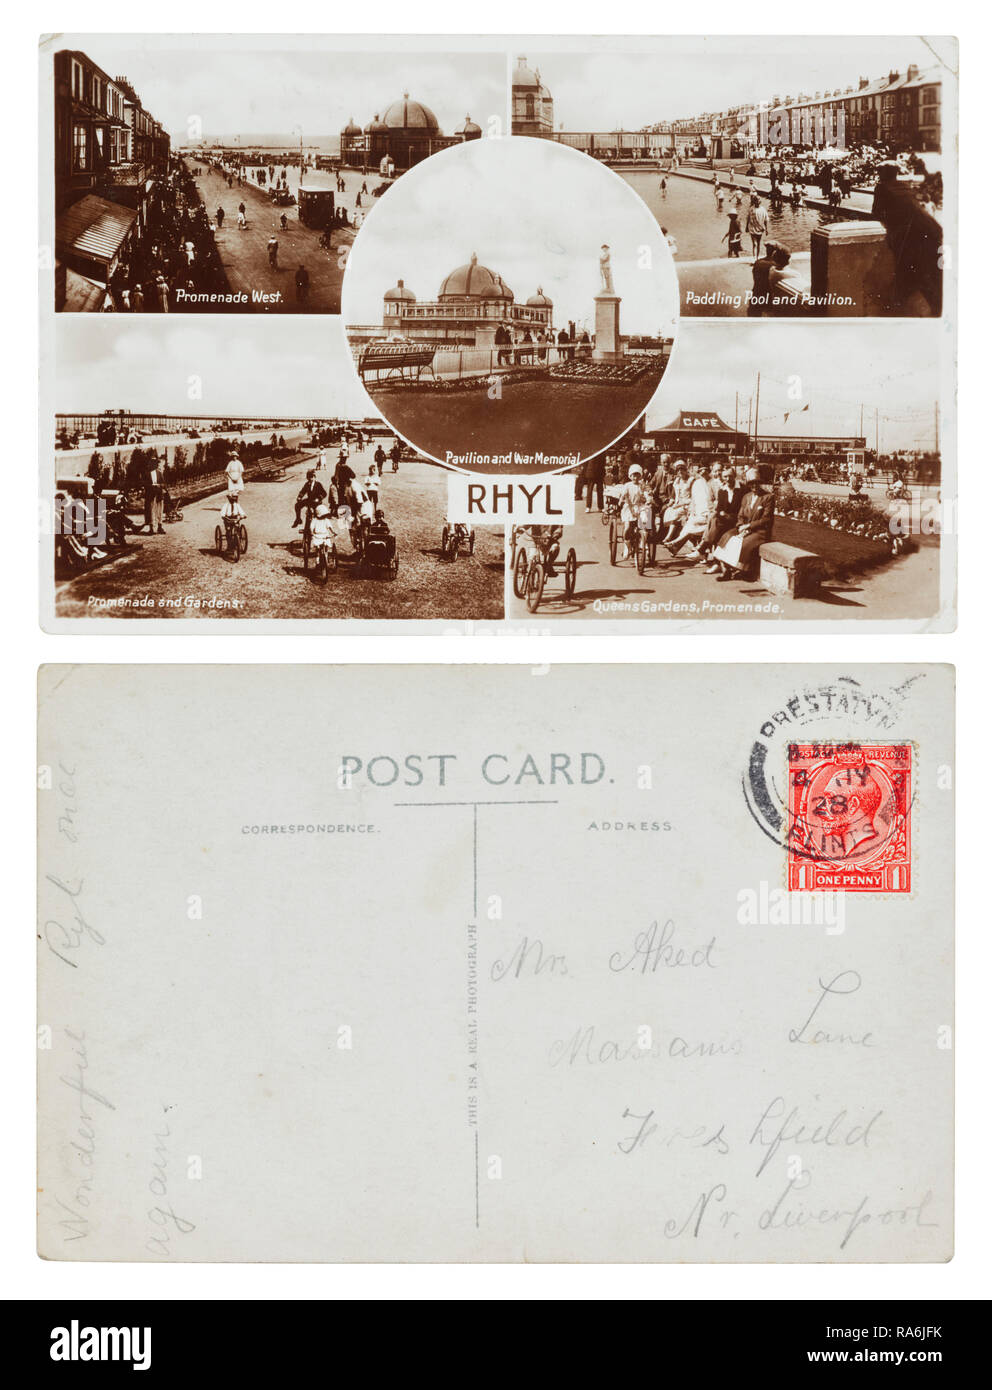 Postkarte gesendet von Rhyl 1928 an Frau Aked, Massams Lane, Freshfield, Liverpool mit der Meldung "wundervoll Ryl erneut.' Stockfoto